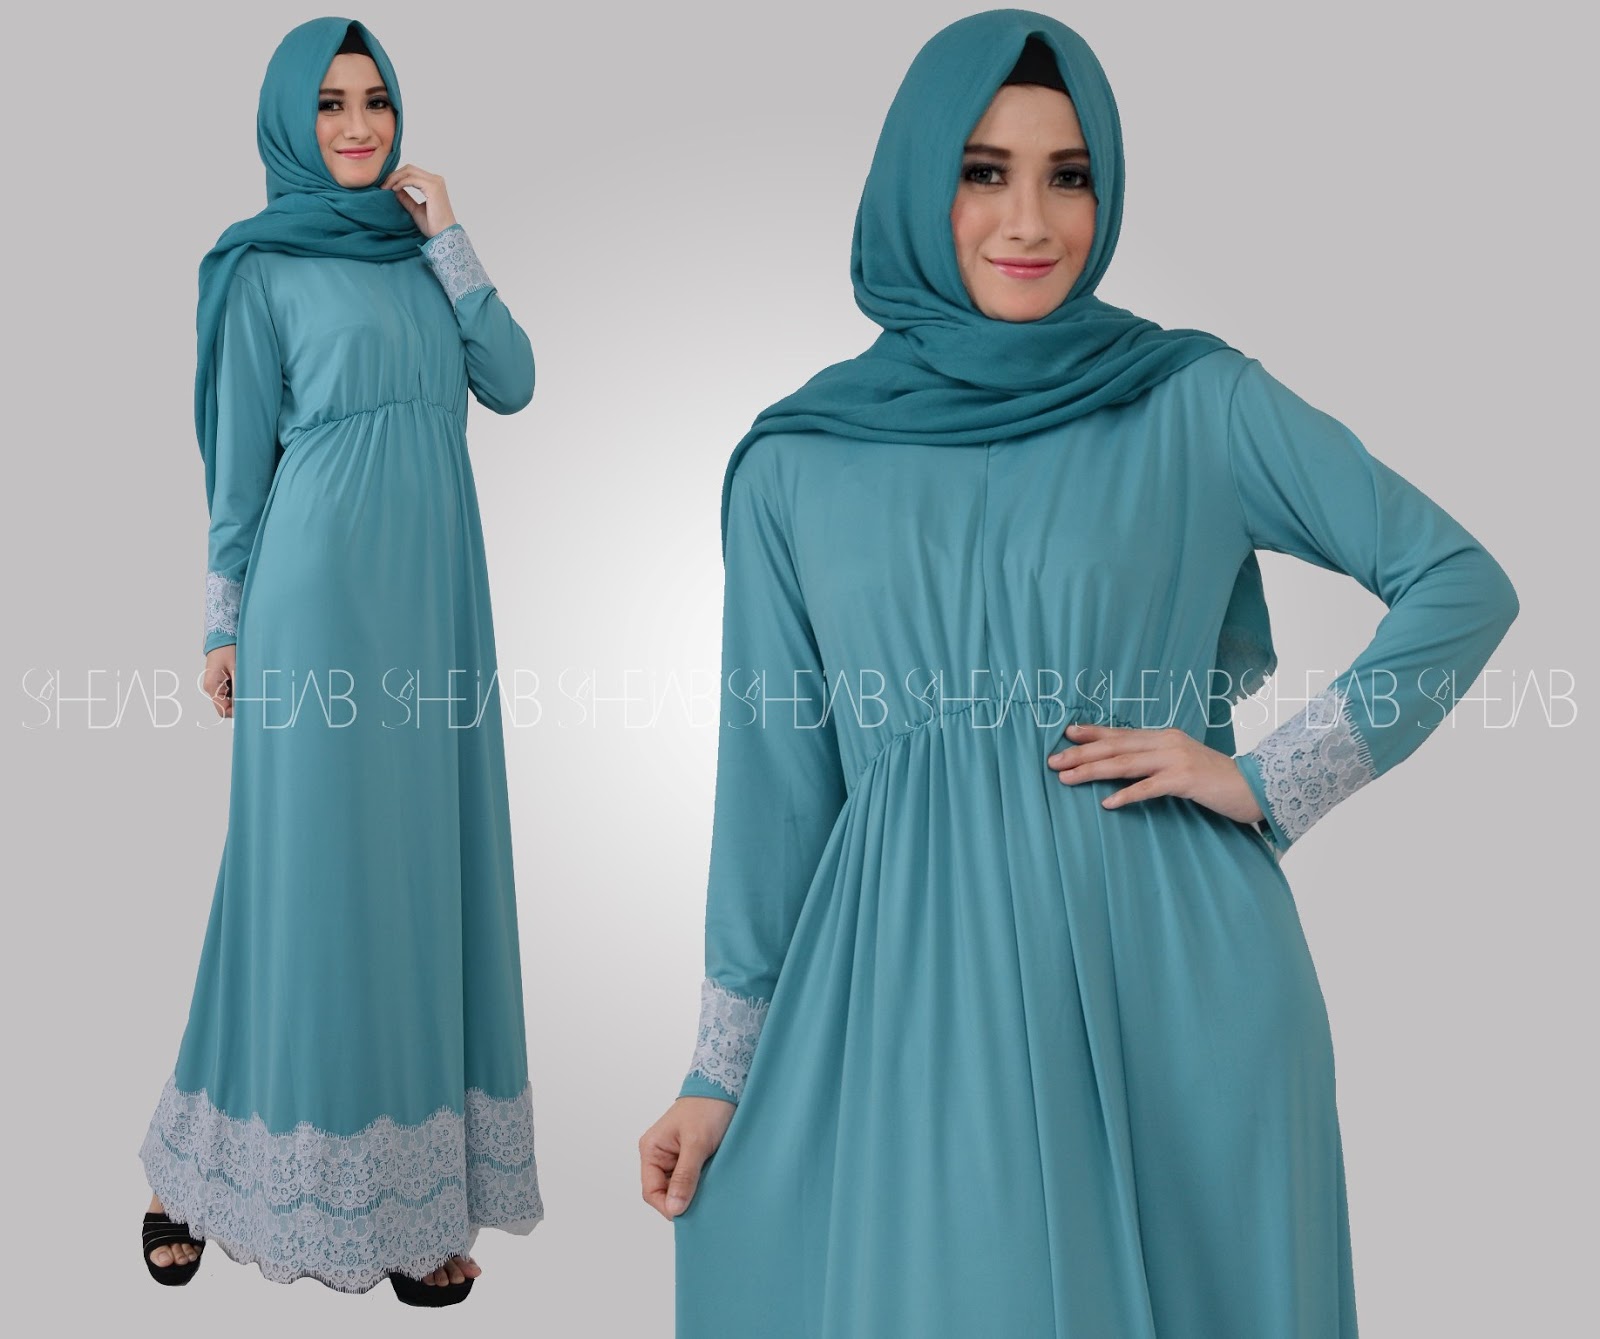  Baju Muslim Online Model Terbaru 2019 Busana Wanita 